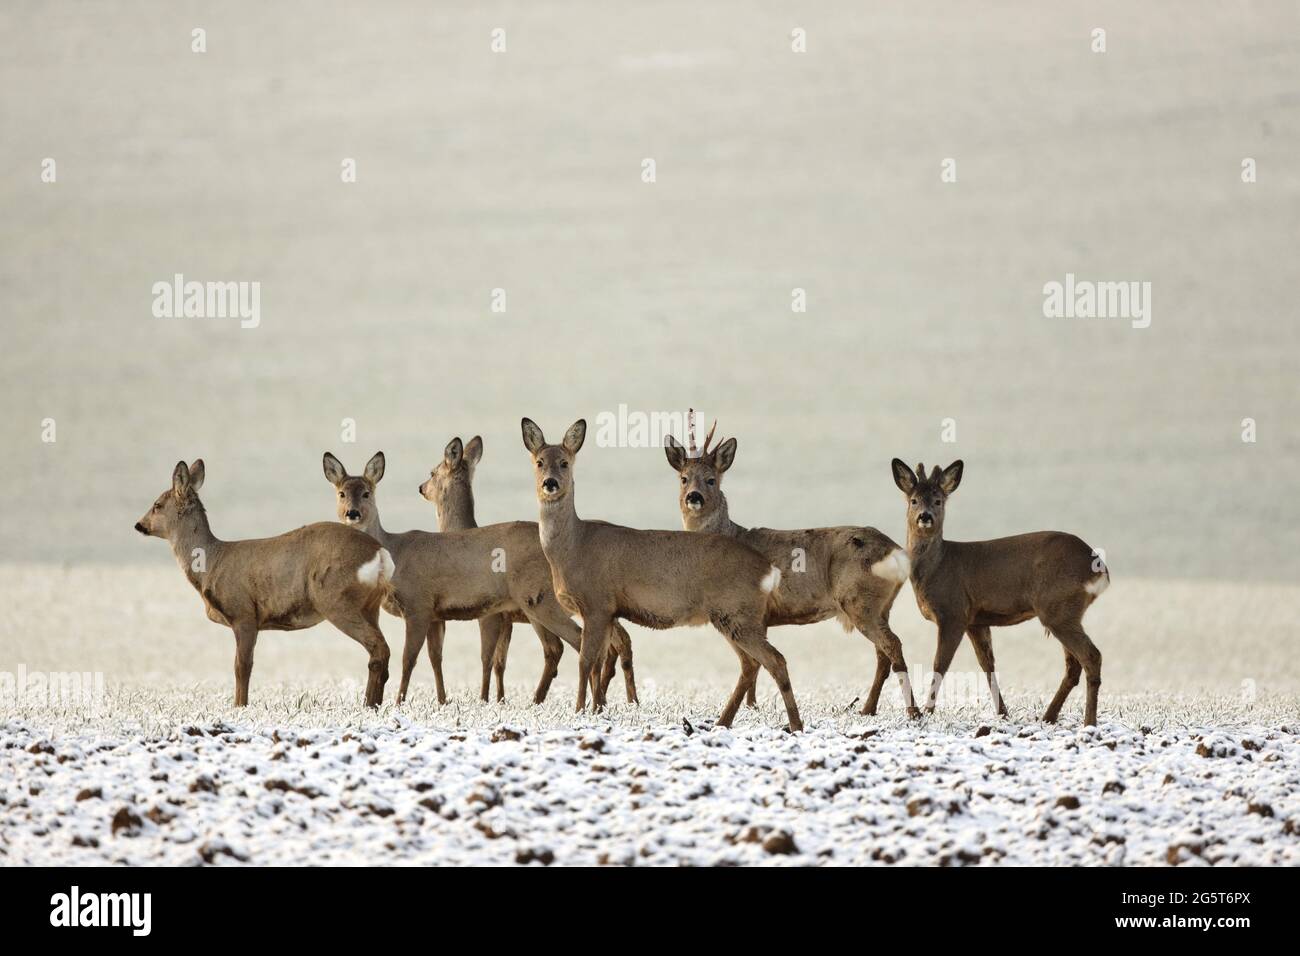 roe deer (Capreolus capreolus), group of roe deers in a snowy field, Germany, Baden-Wuerttemberg Stock Photo